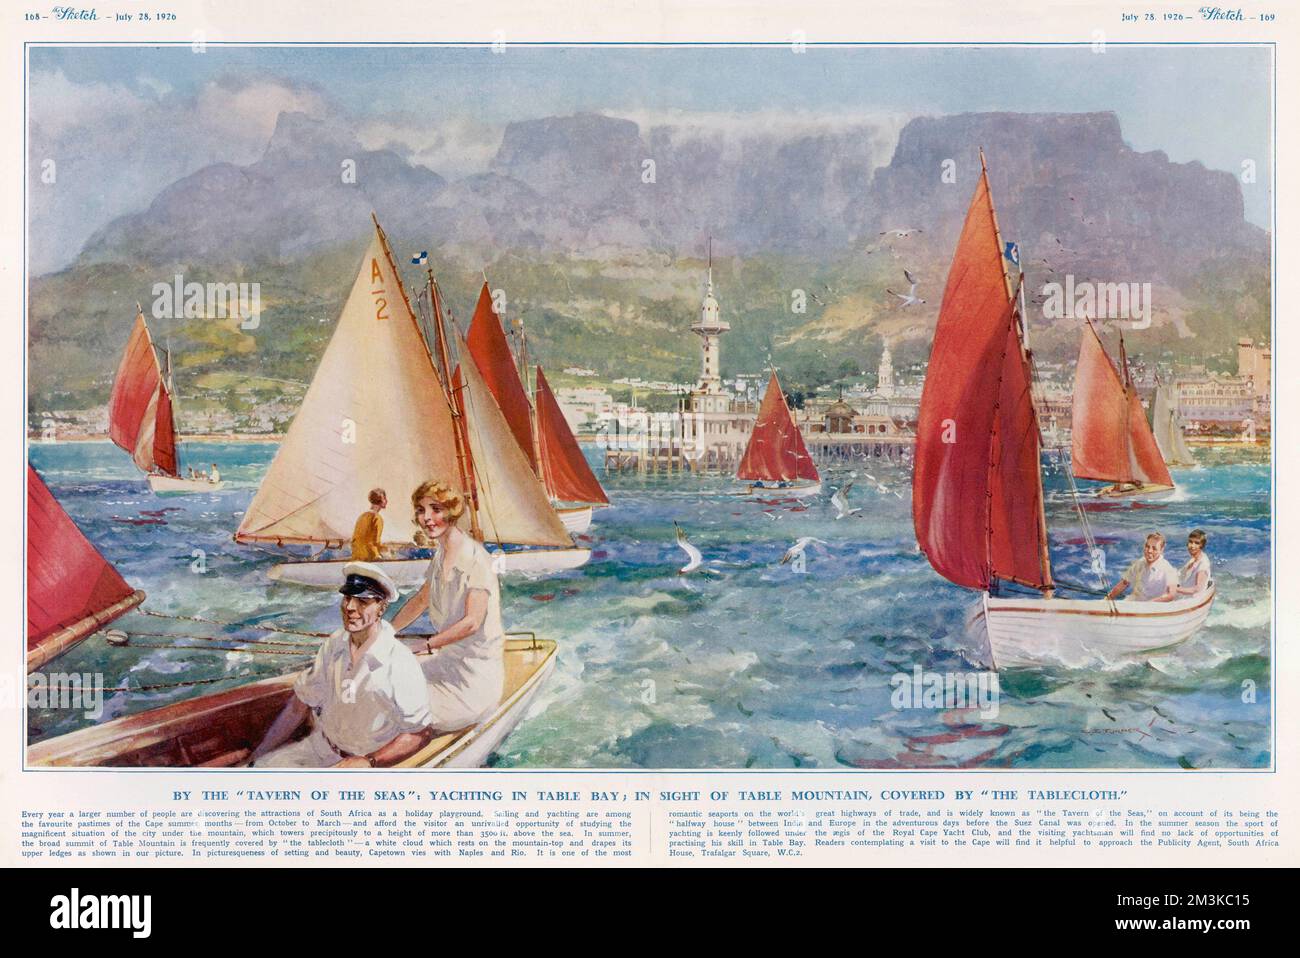 Une superbe vue sur la navigation de plaisance à Table Bay au large de Cape Town, en Afrique du Sud, avec le contour imposant de Table Mountain, enveloppé de brume, en arrière-plan. Date: 1926 Banque D'Images